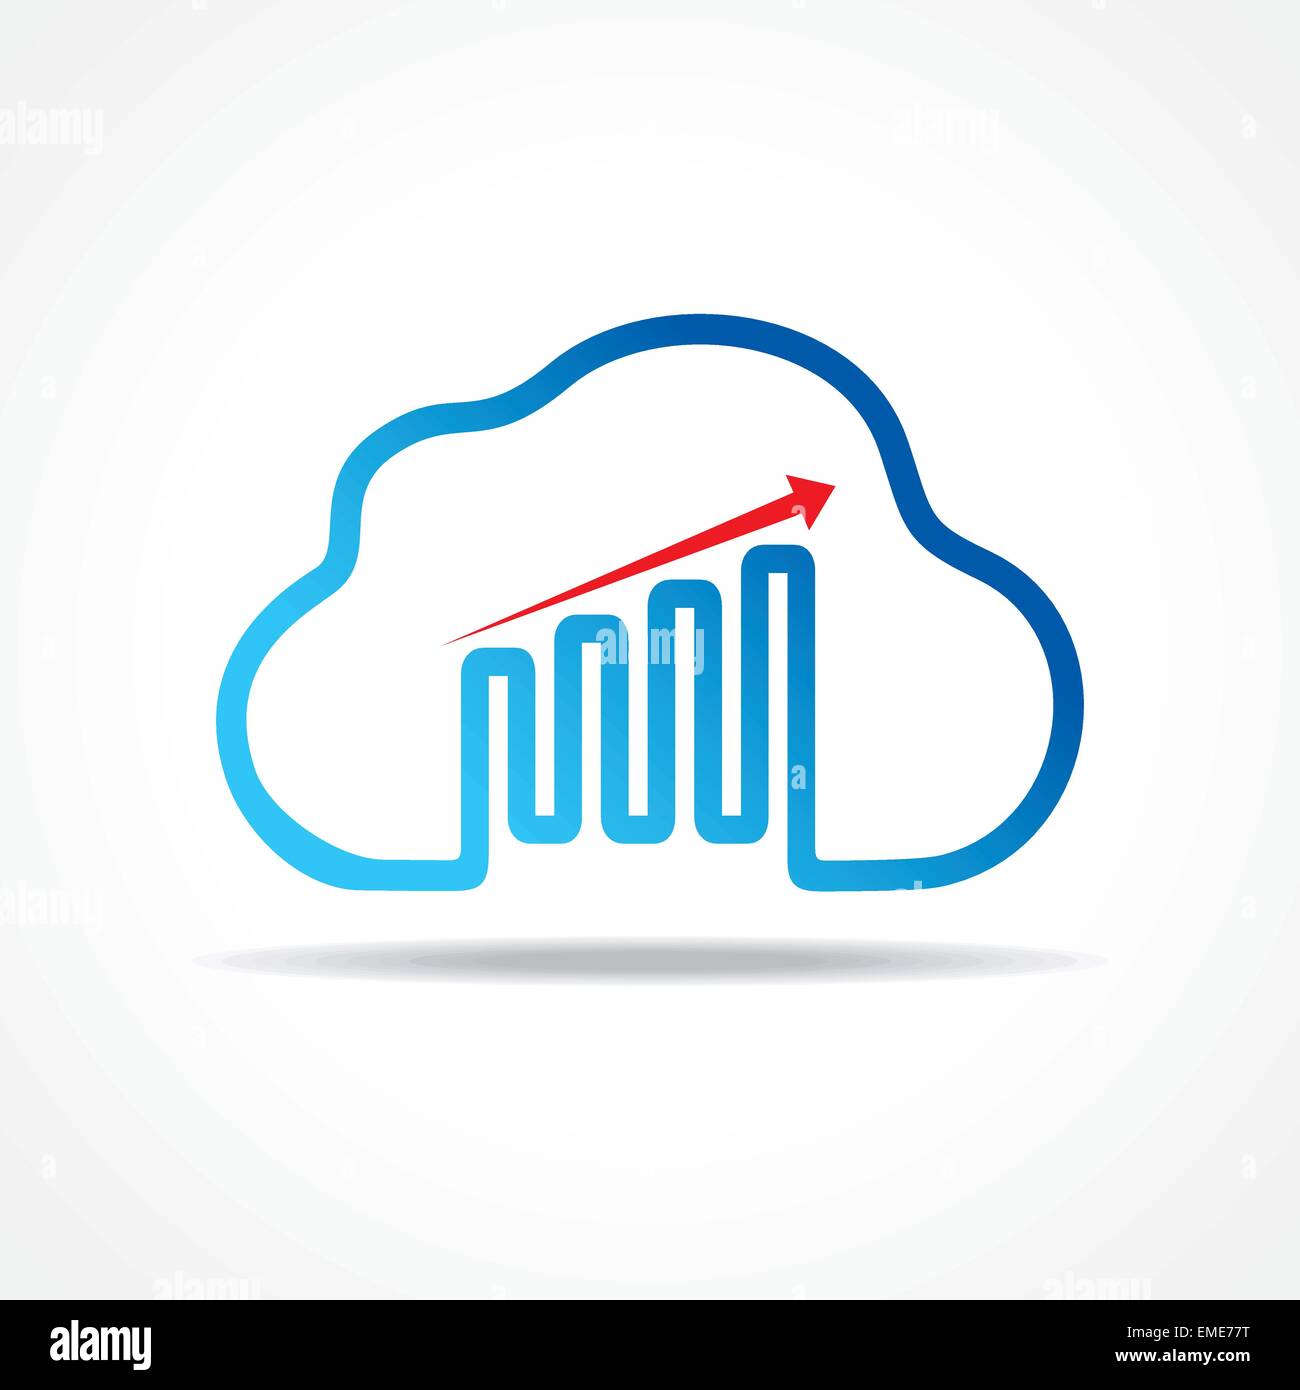 Geschäft Wachstum Diagrammdesign mit Cloud-Design-Konzept-Vektor Stock Vektor